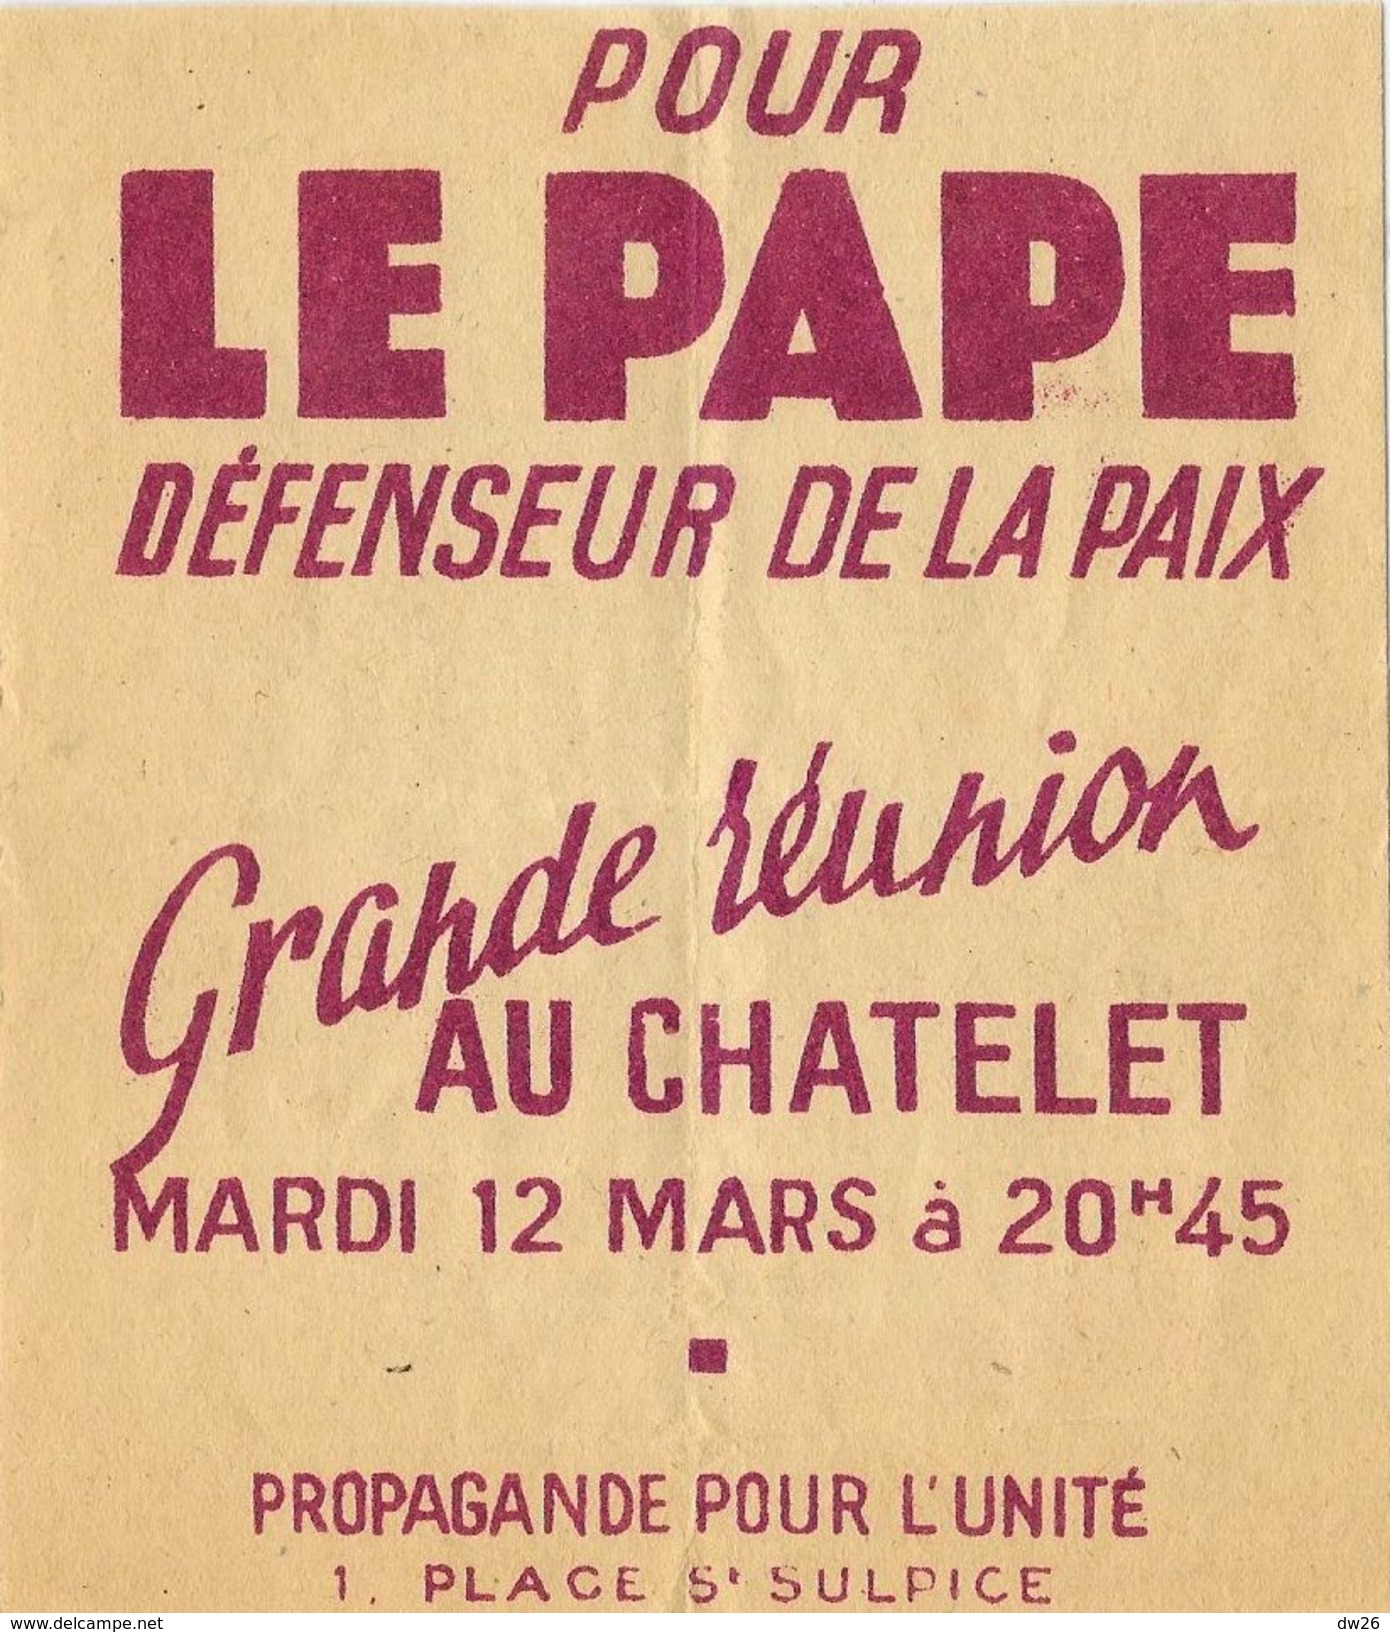 Affiche (Flyer De 10 X 12 Cm): Pour Le Pape, Défenseur De La Paix, Réunion Au Chatelet Mardi 12 Mars (propagande) - Posters